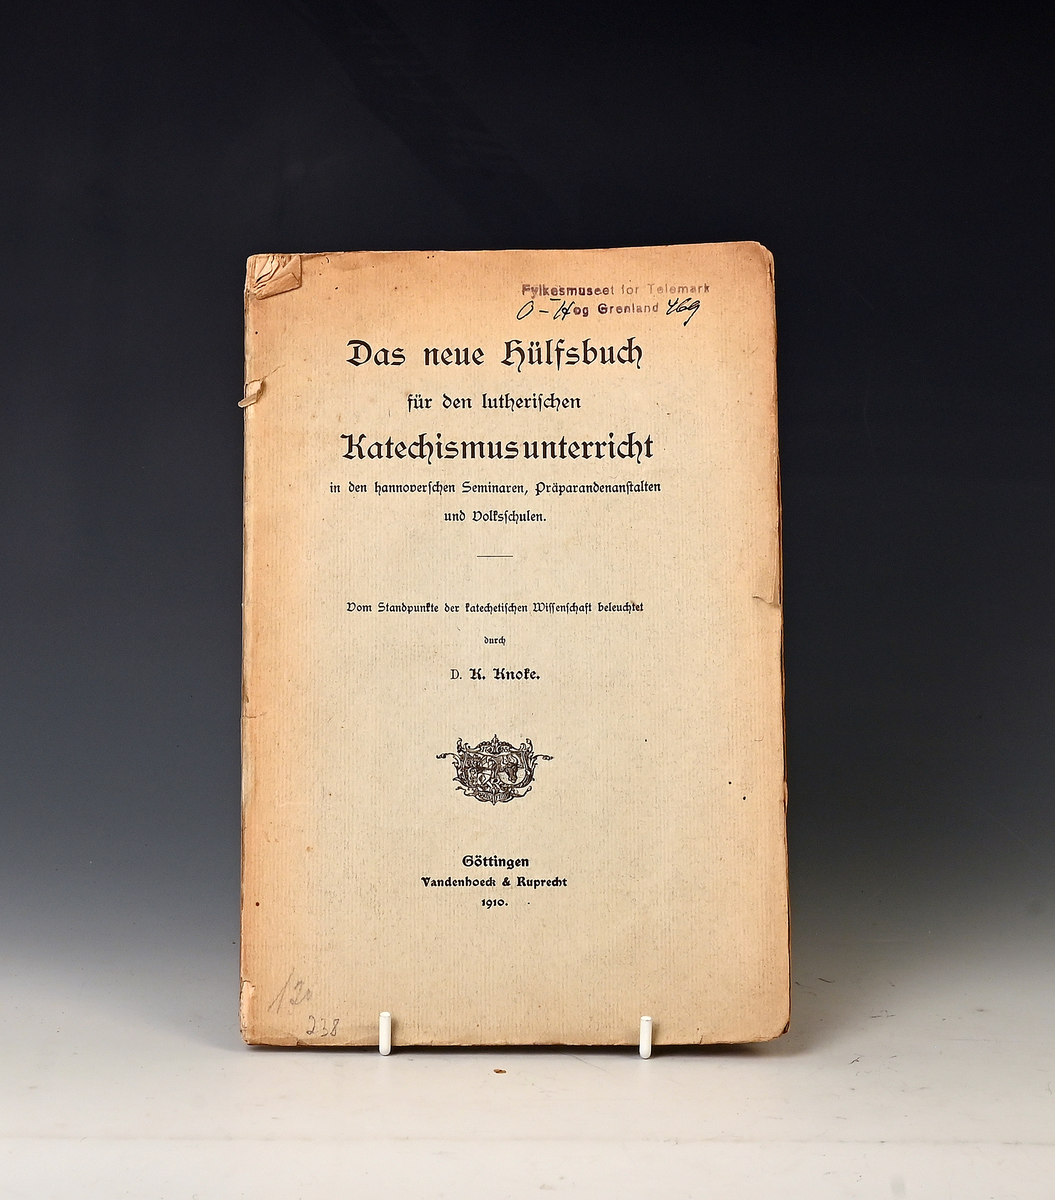 Das neue Hülfsbuch für den letherisschen Katechismus unferricht. Göttingen 1910.